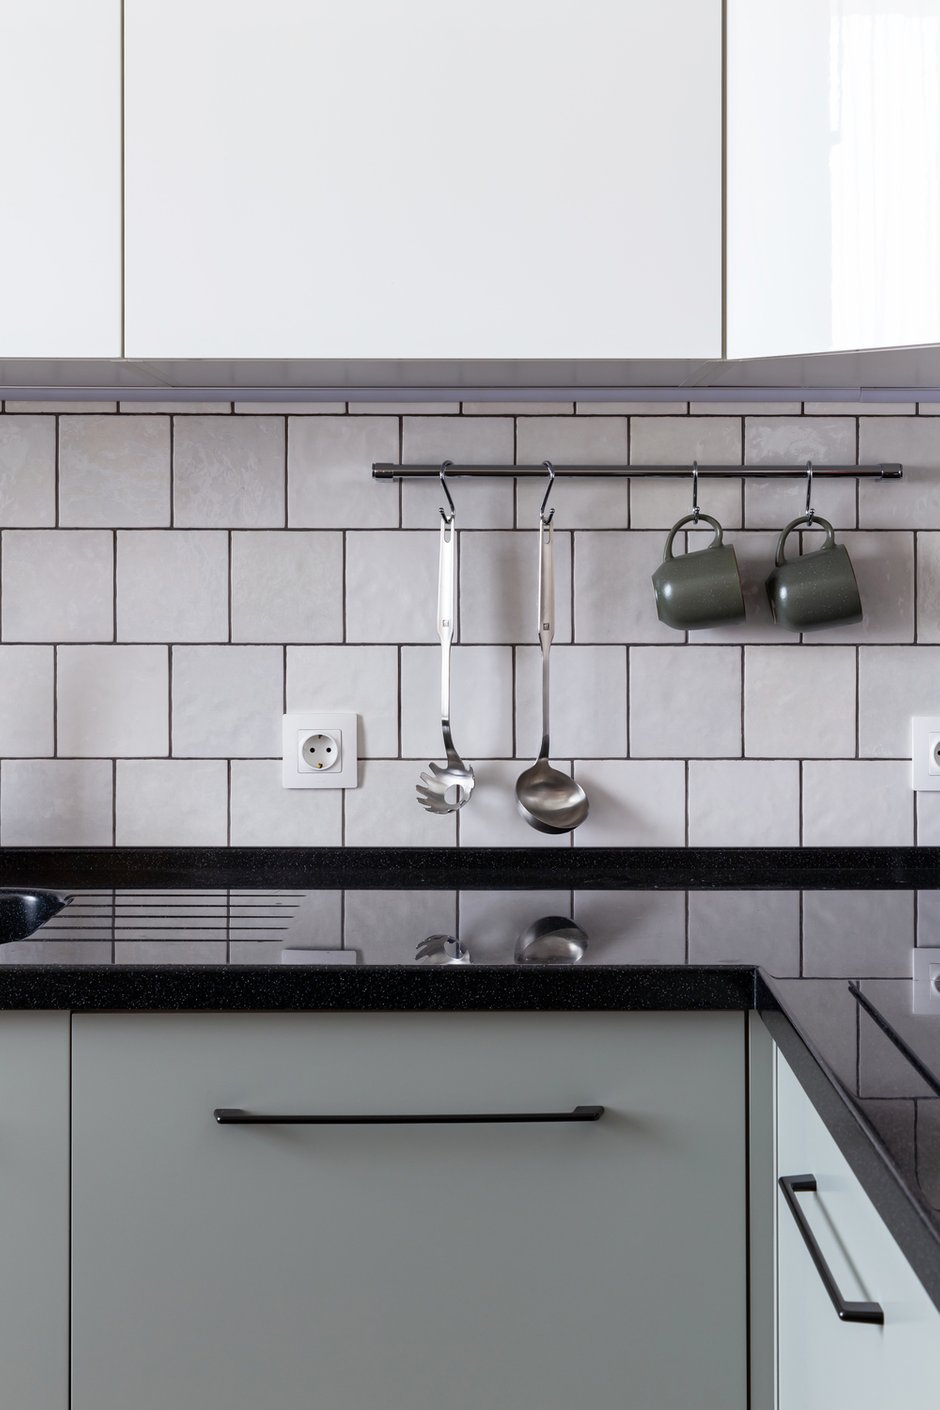 Кухонный гарнитур дополнили контрастной черной фурнитурой, которая делает пространство более стильным и ярким.